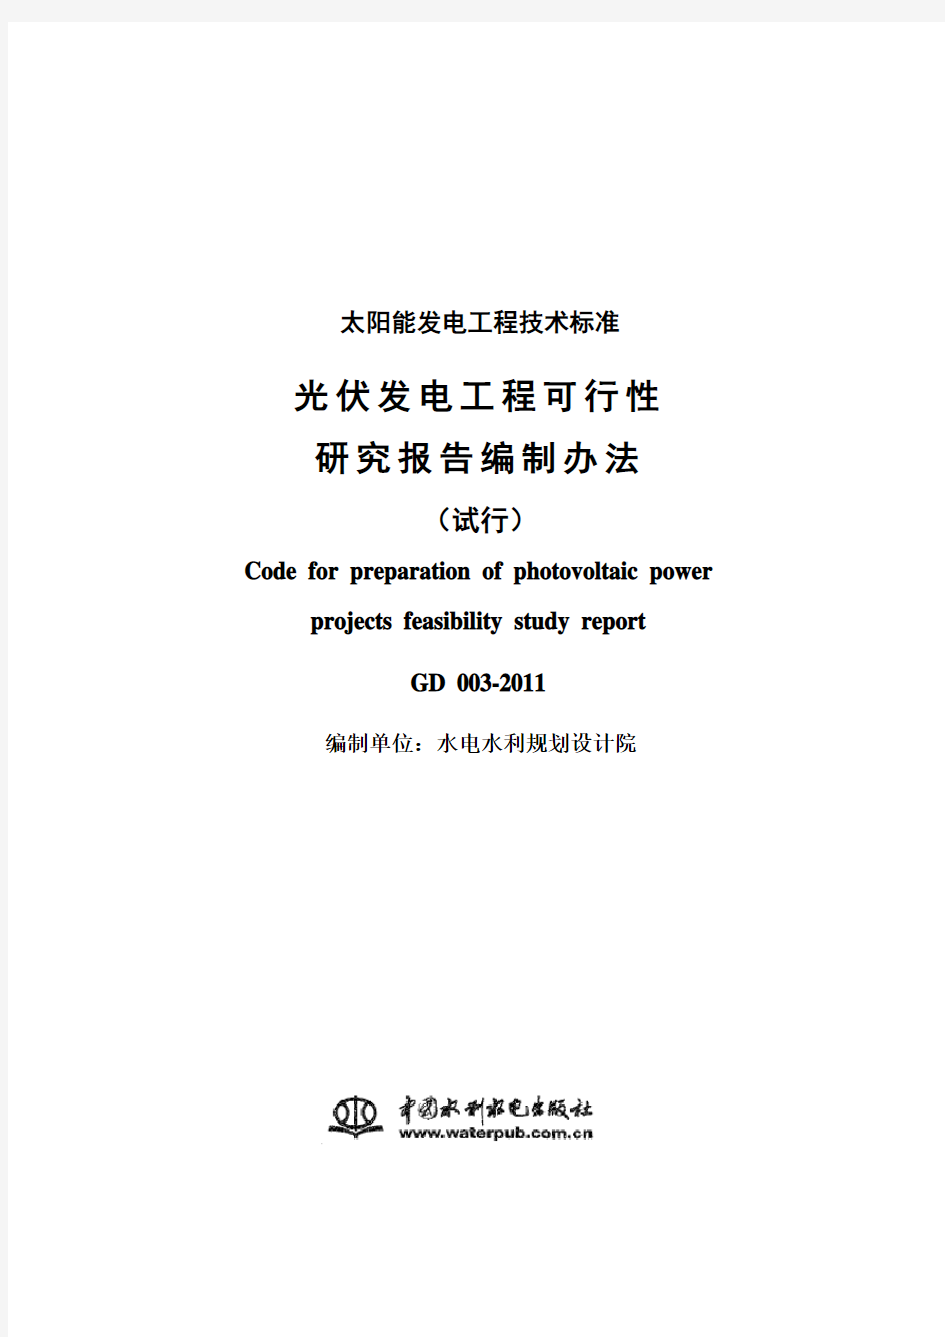 光伏发电工程可行性研究报告编制办法(试行) GD 003-2011